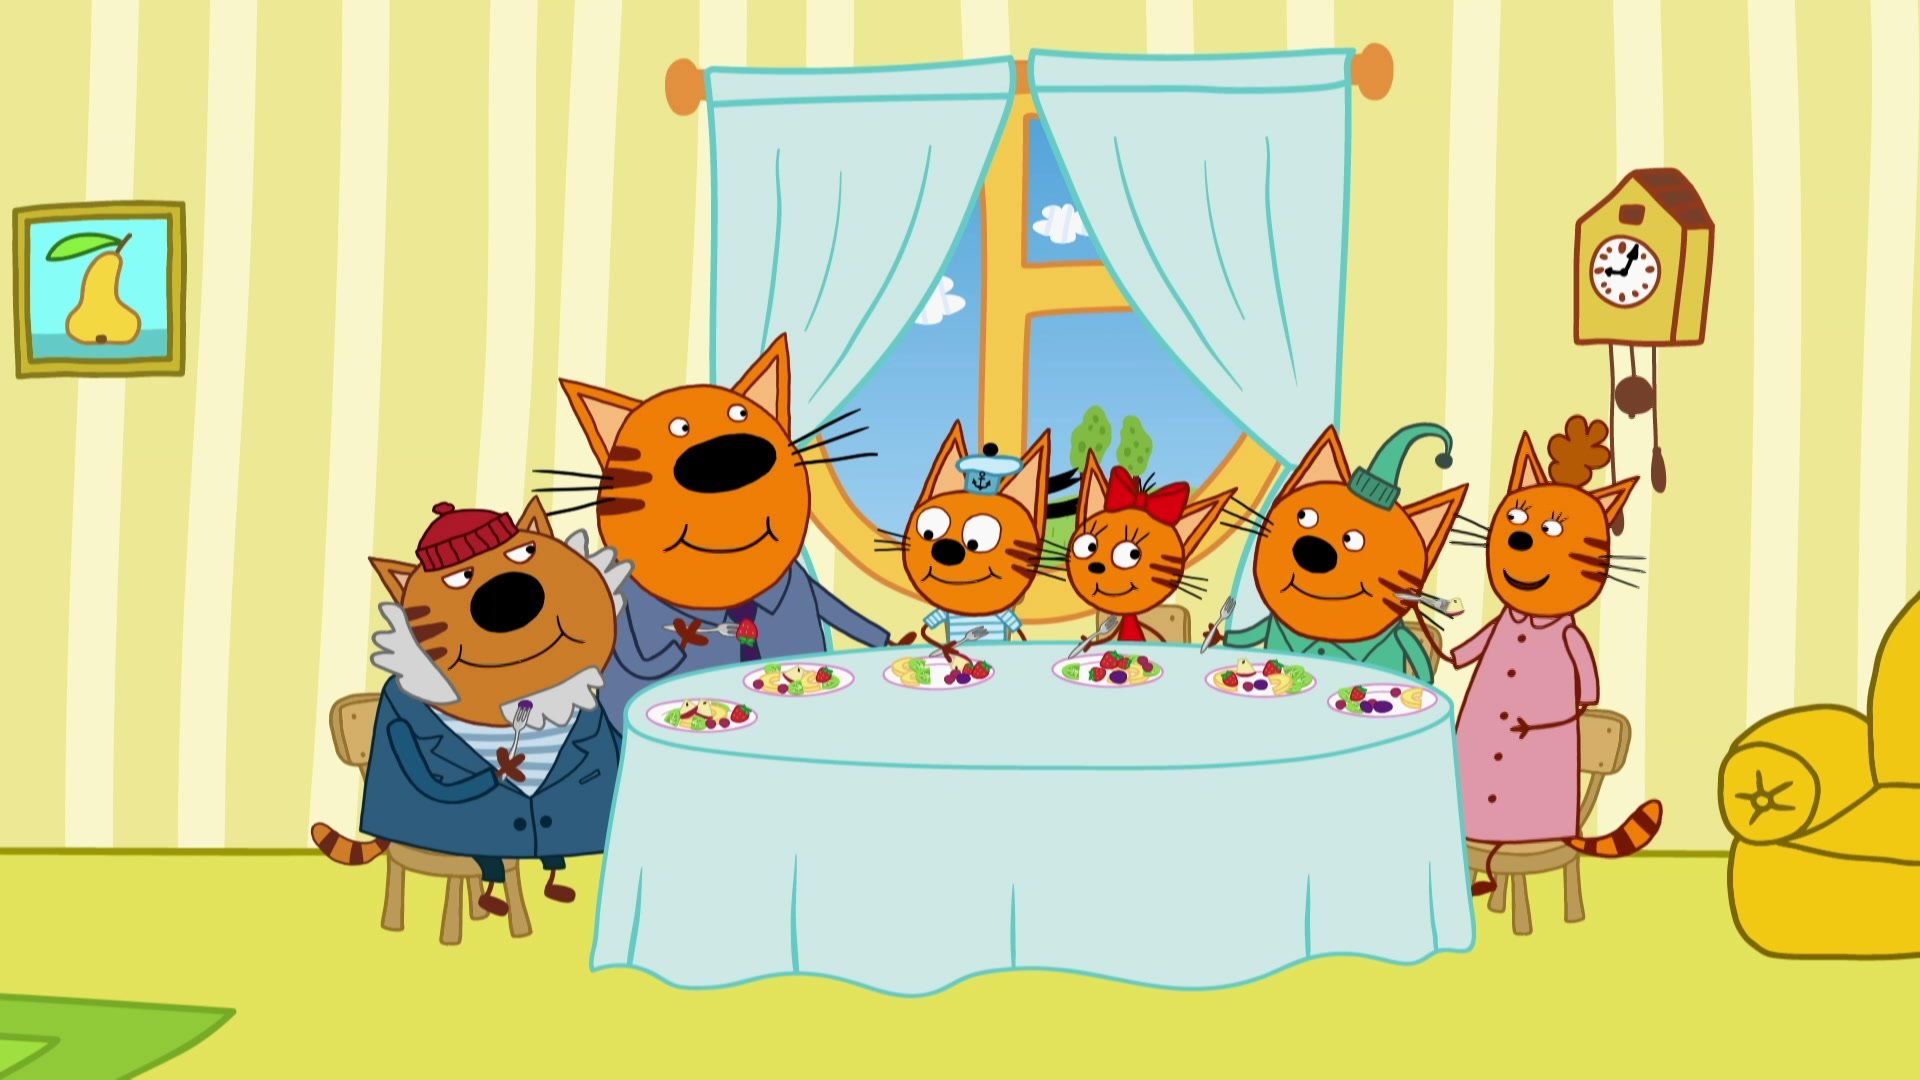 3 кота 2. Три кота мультсериал 3 сезон. Дедушка три кота мультфильм. Три кота 111 серия. Мультфильм три кота семья.